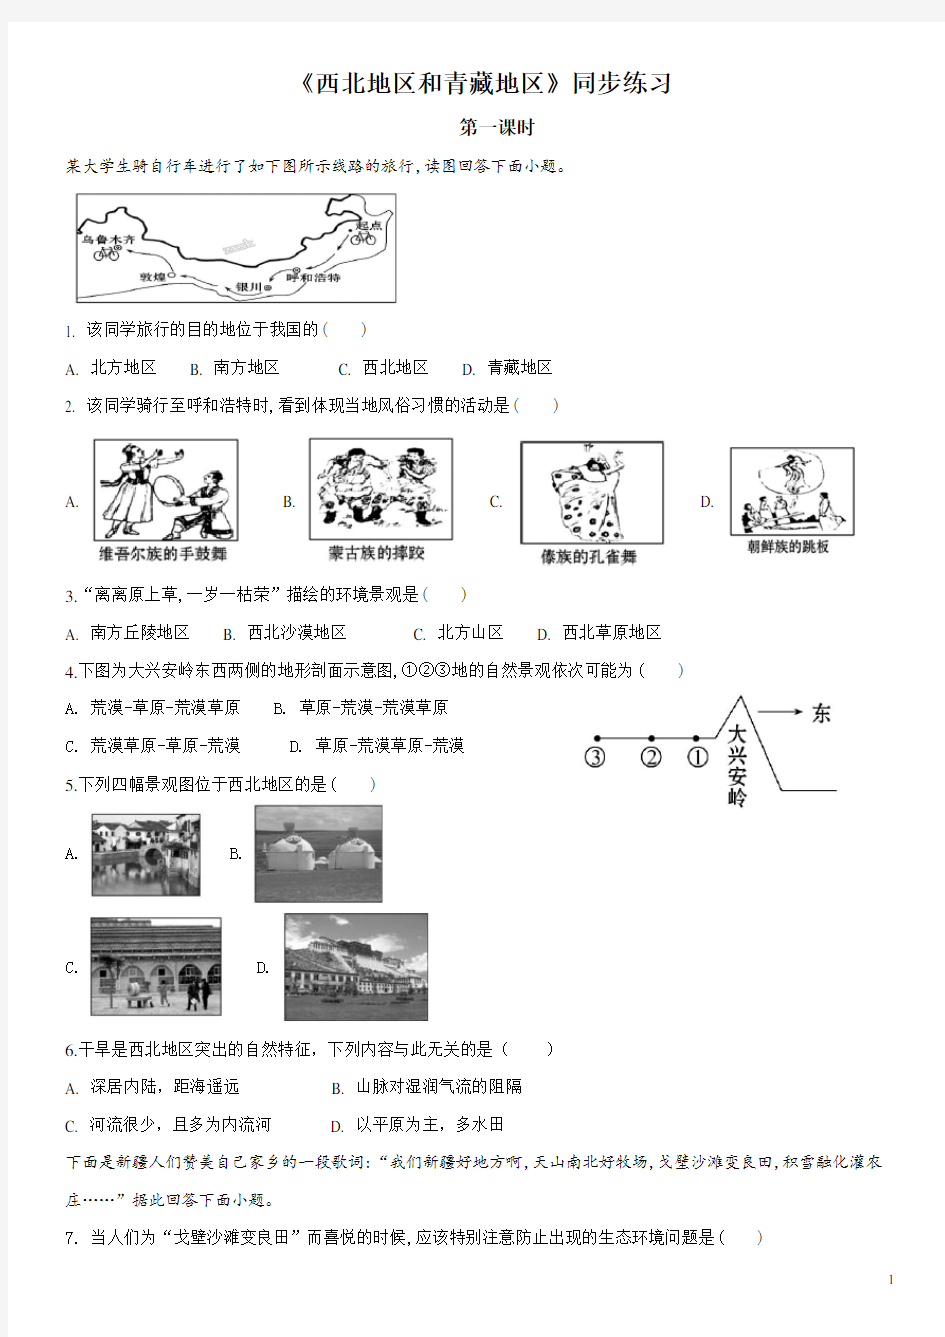 5.3西北地区和青藏地区练习题(1)